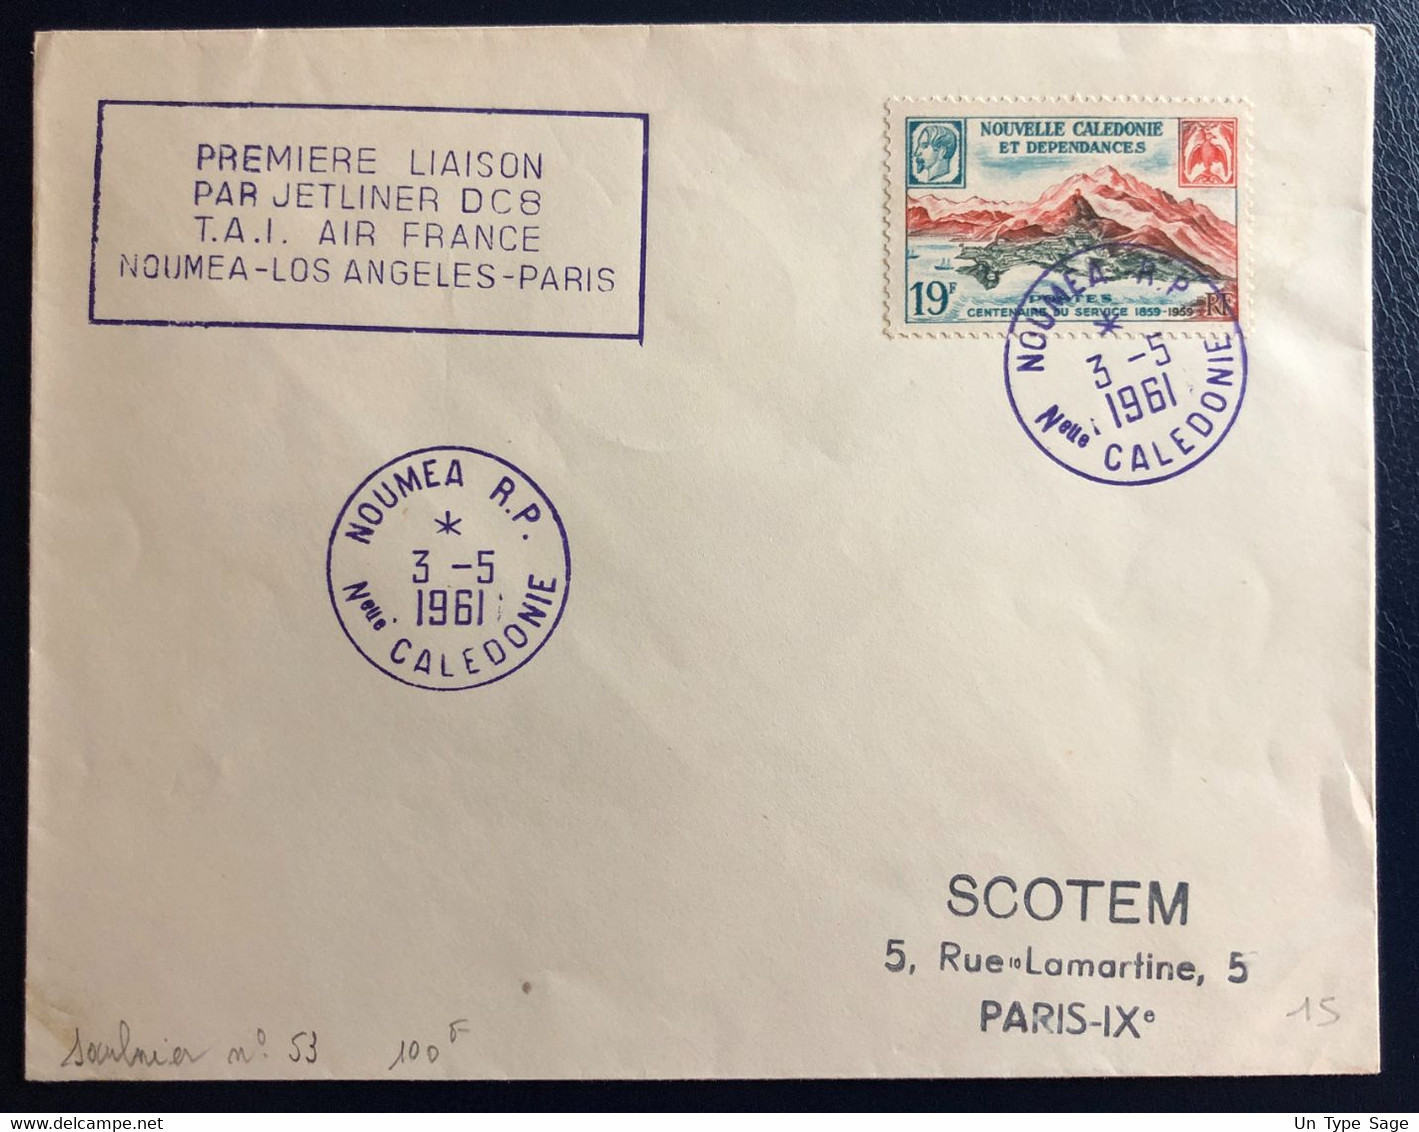 Nouvelle-Calédonie N°300 Sur Enveloppe, Liaison NOUMEA-PARIS-LOS ANGELES-PARIS 3.5.1961 - (B4537) - Covers & Documents